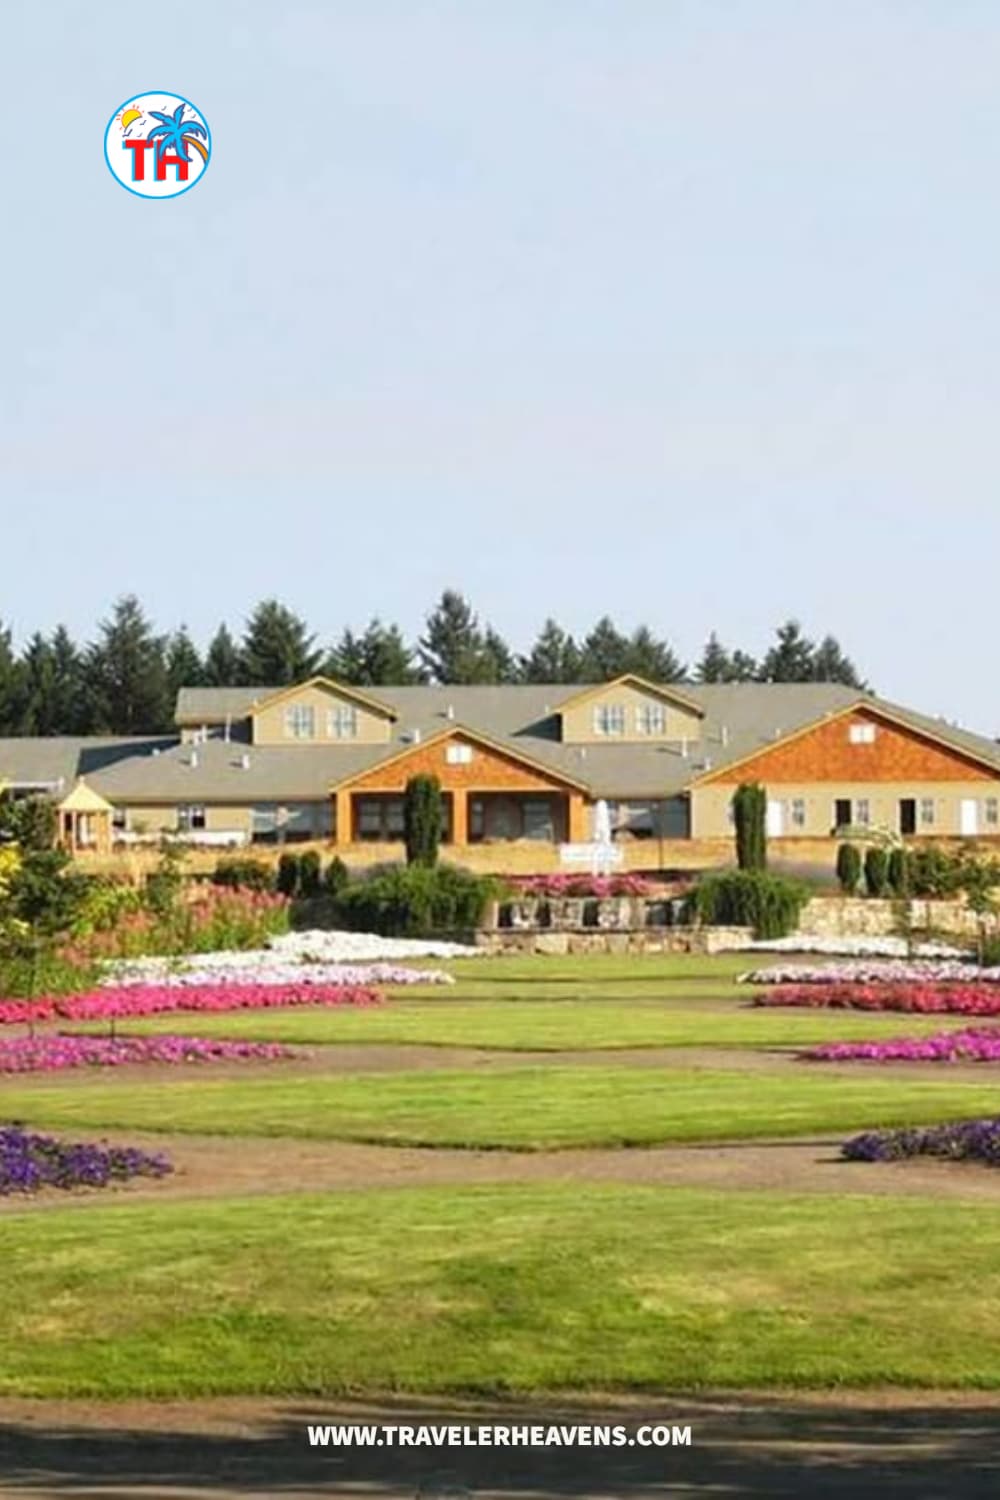 Hotels, Oregon, Salem Oregon hotels with jacuzzi in room, Salem Oregon Travel Guide, Travel to Oregon, Visit Salem Oregon